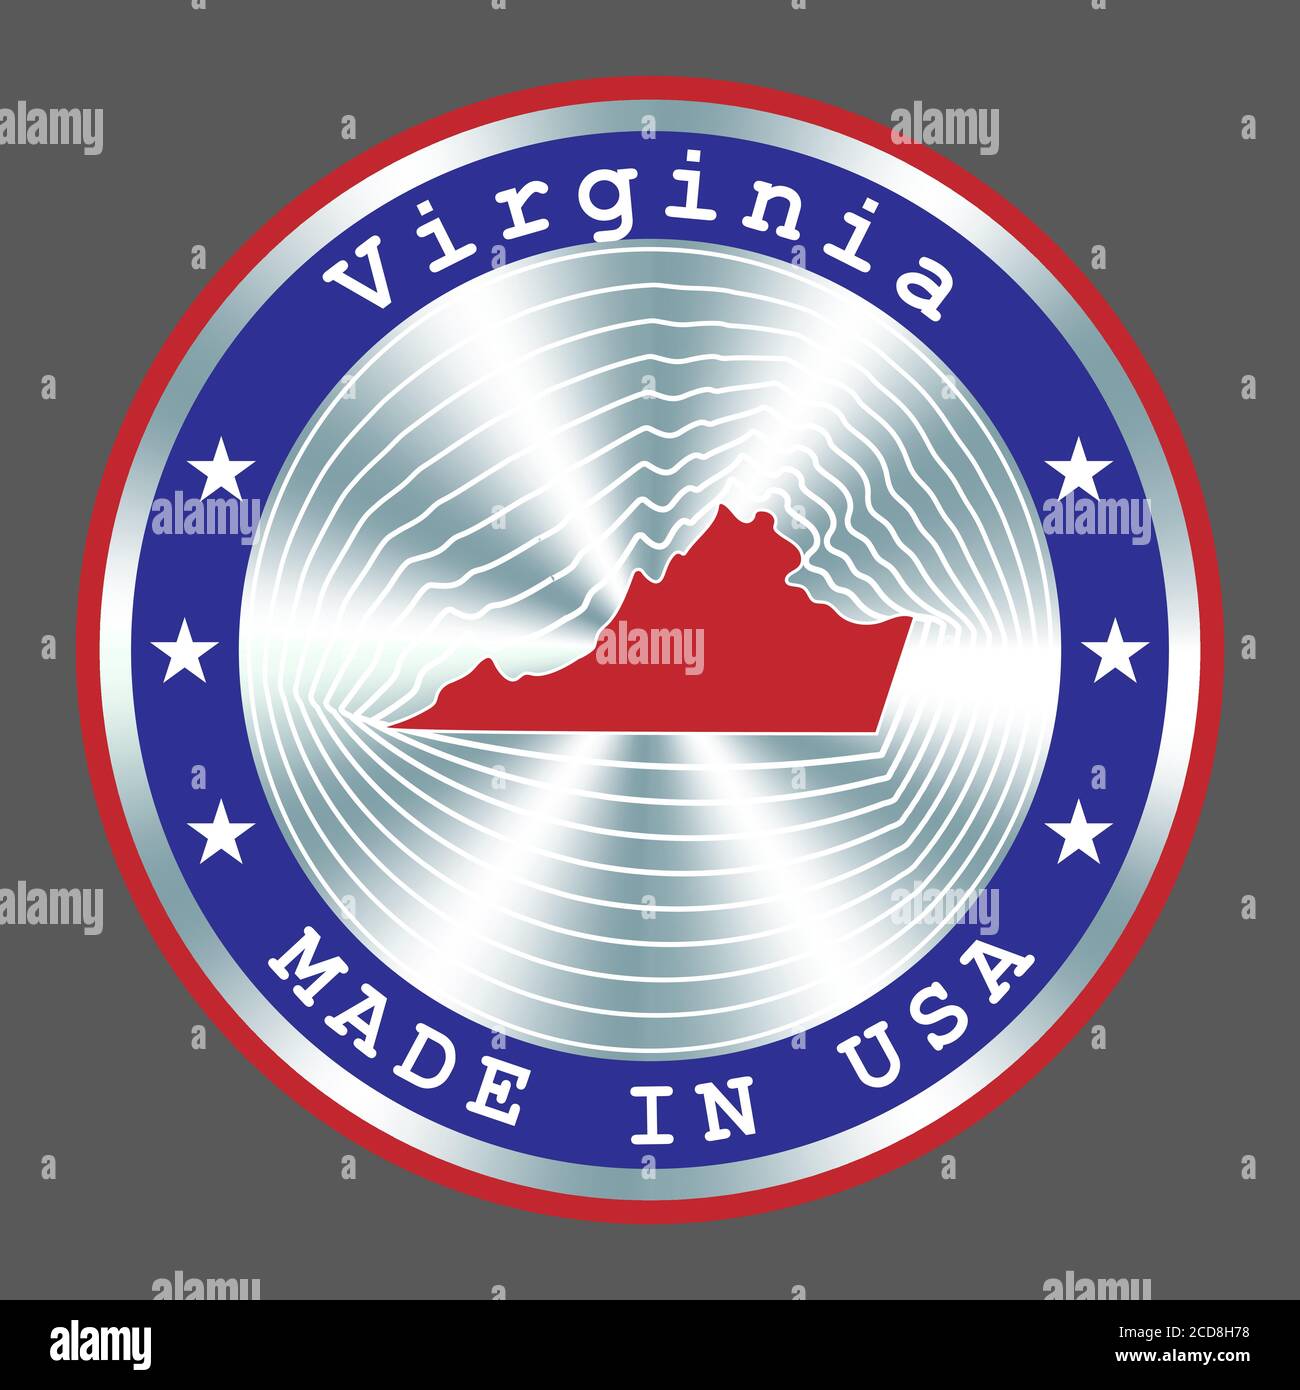 Made in Virginia lokale Produktion Schild, Aufkleber, Siegel, Stempel. Rundes Hologramm-Schild für Etikettendesign und nationale Vermarktung Stock Vektor